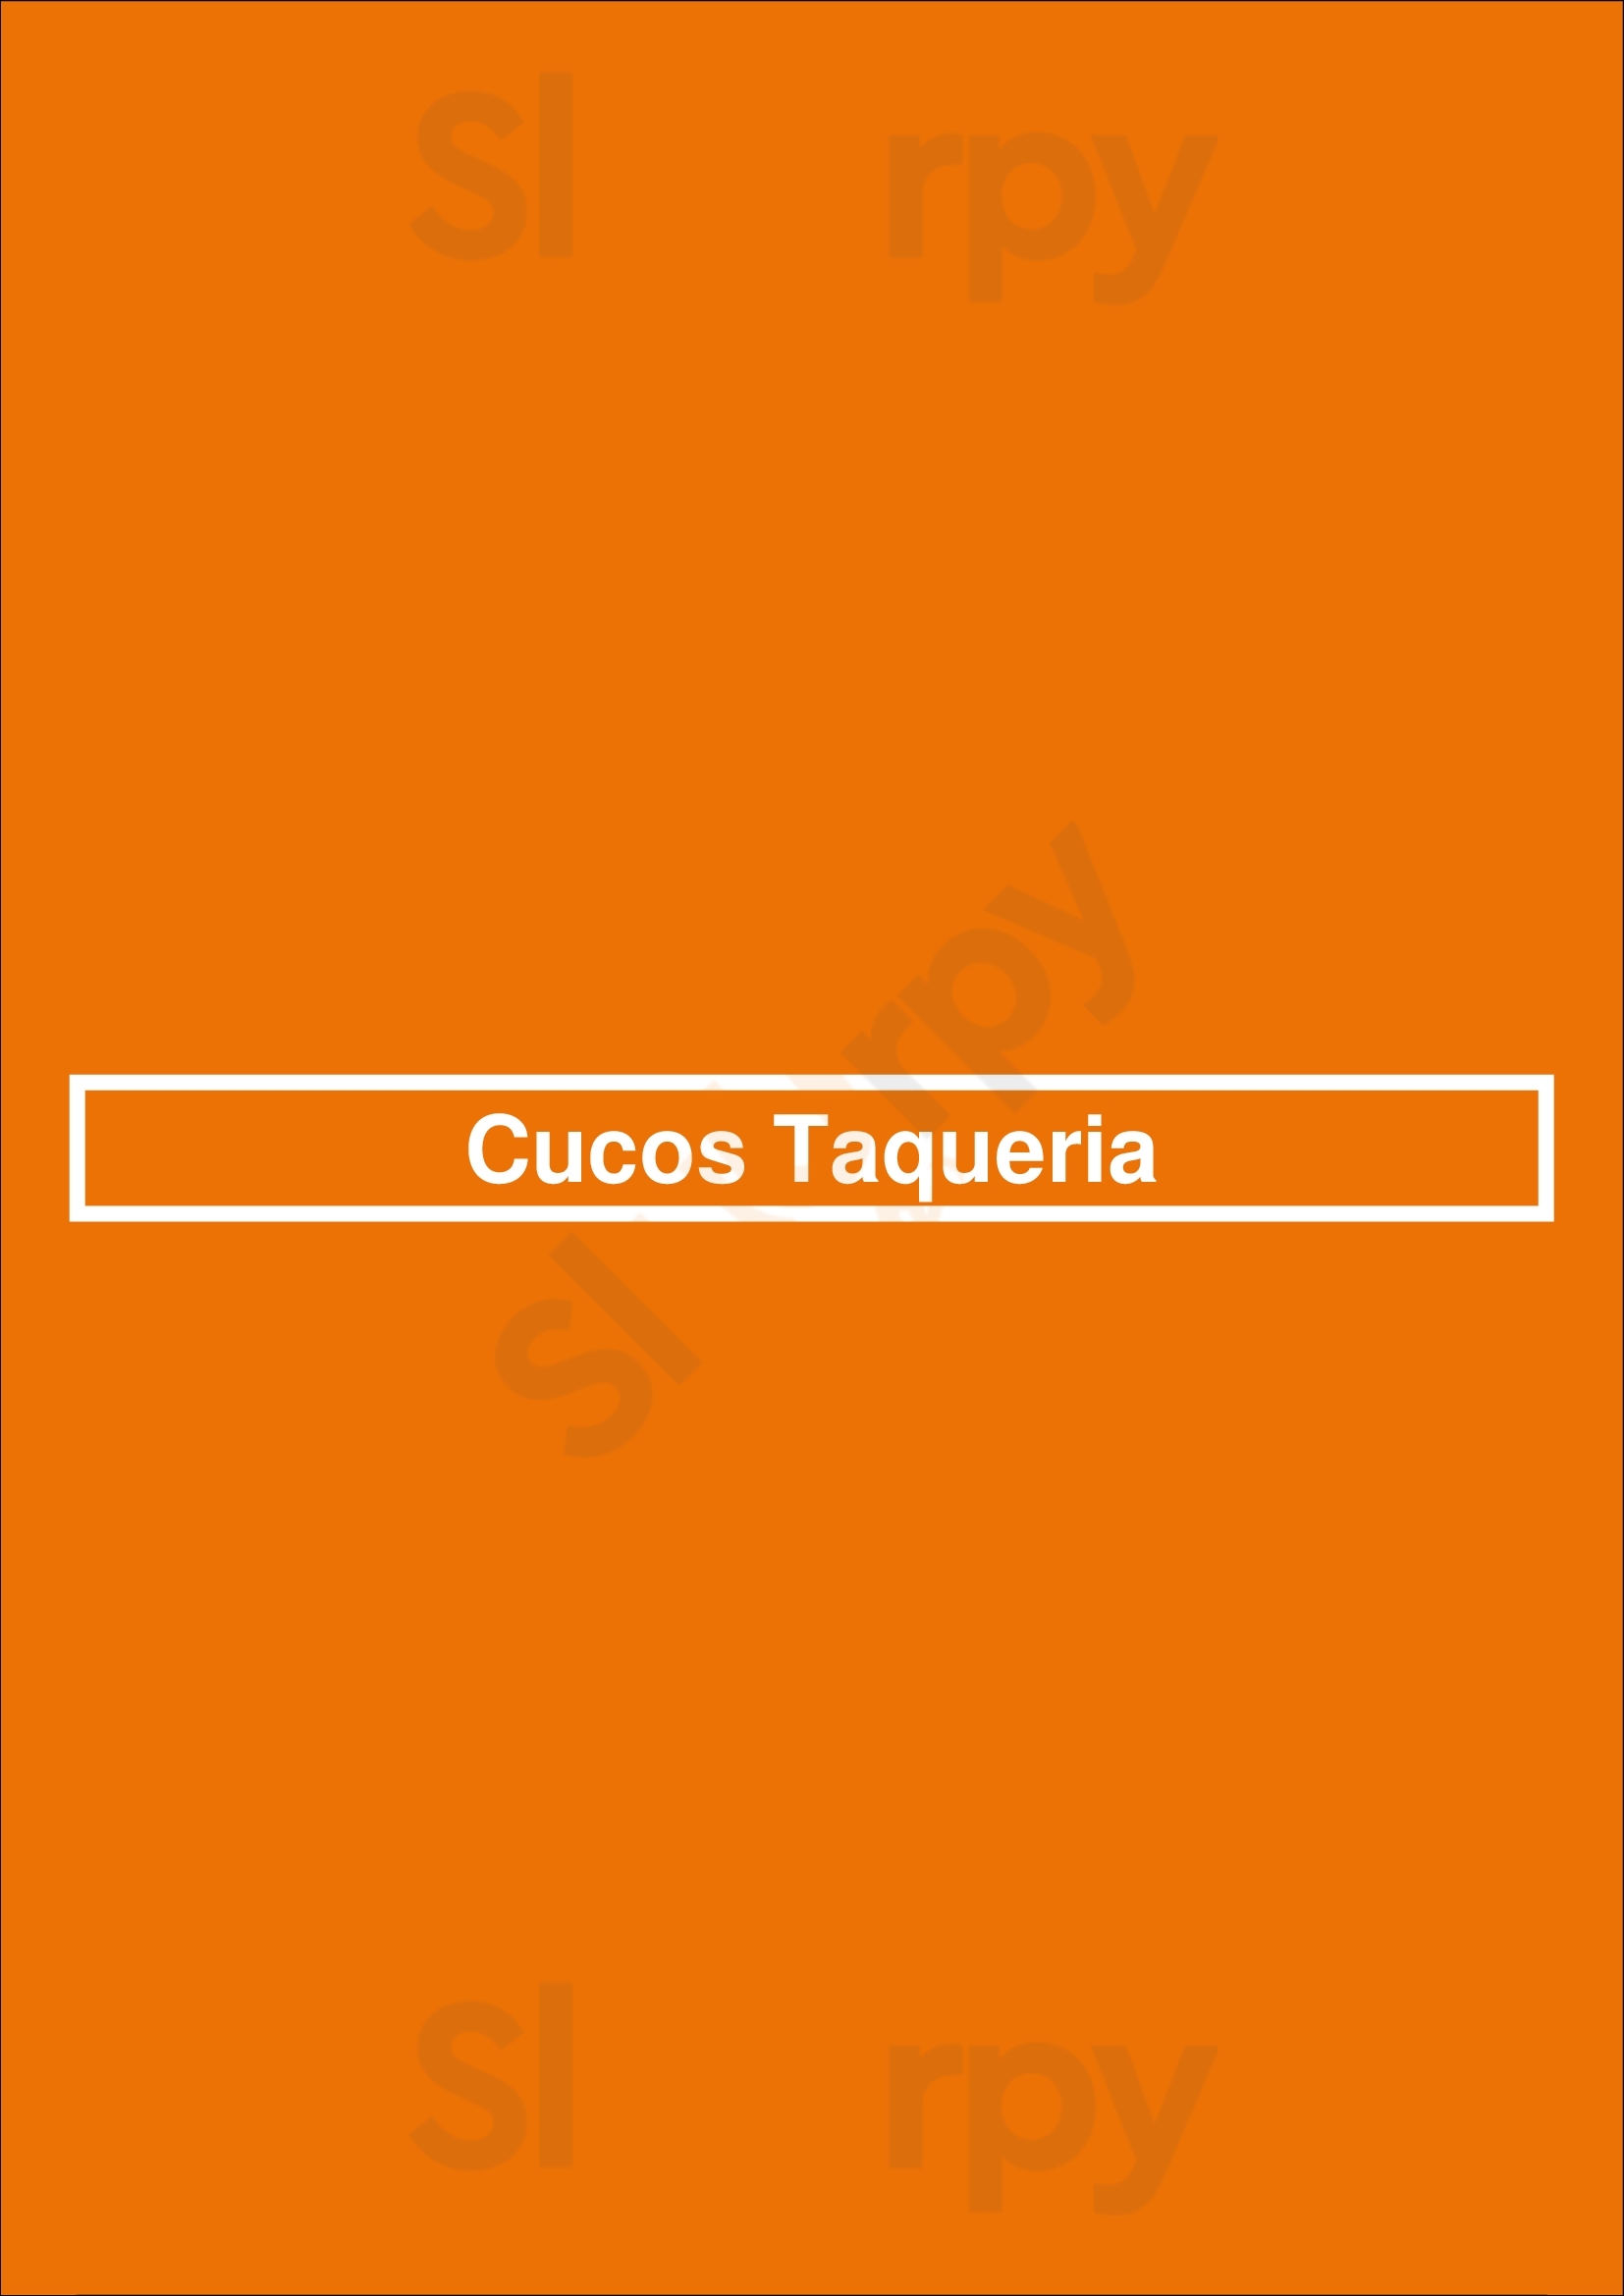 Cucos Taqueria Sacramento Menu - 1